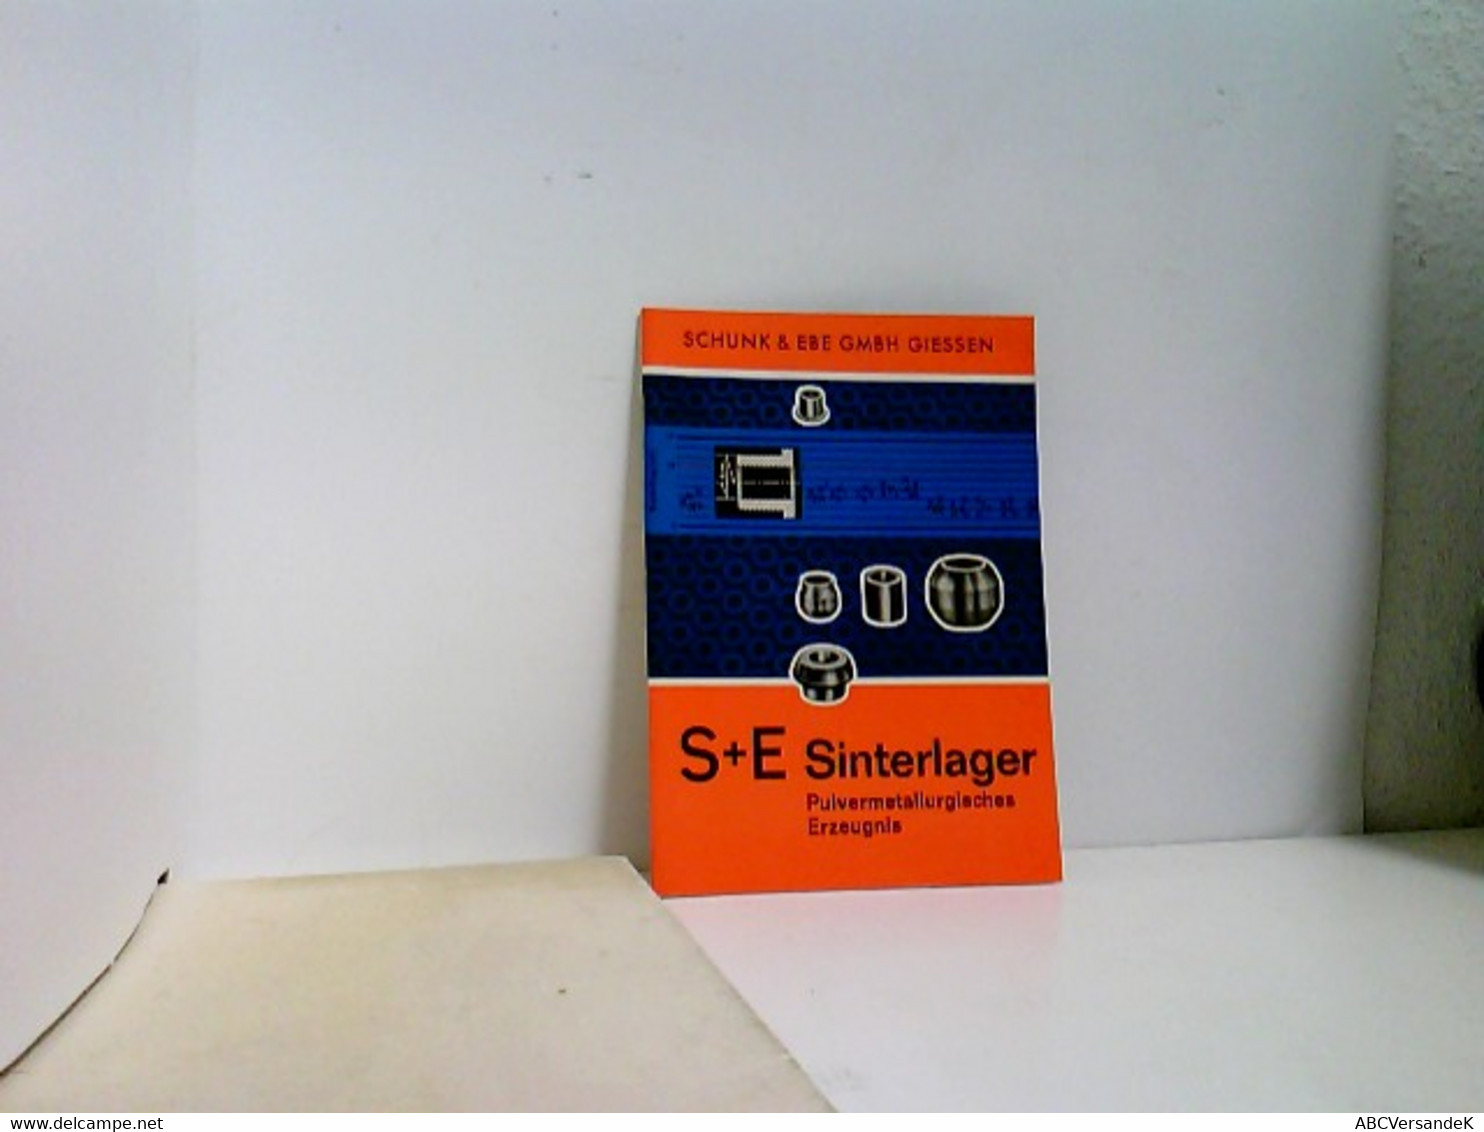 S + E Sinterlager - Technical